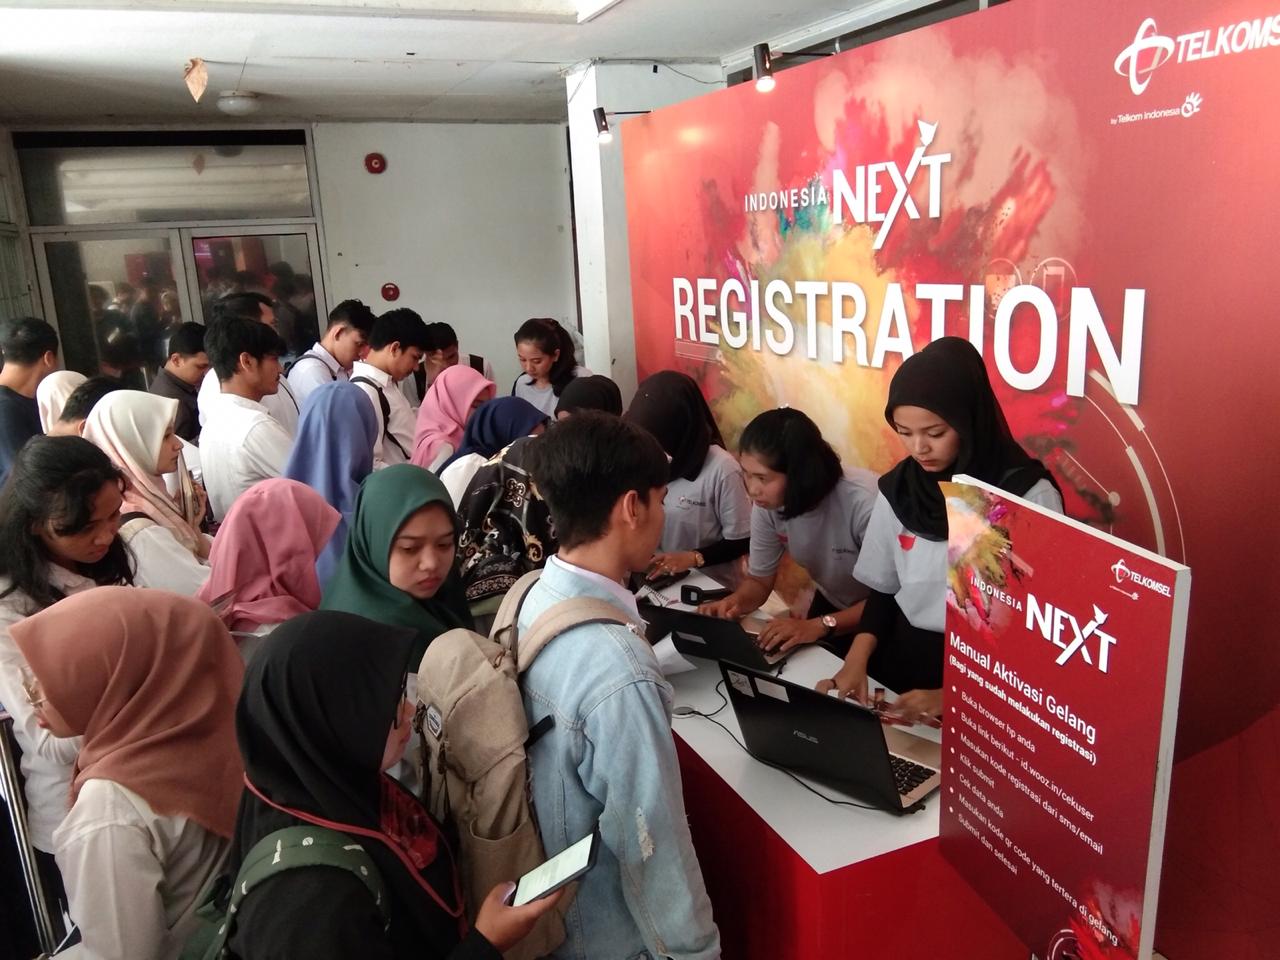 Antusias mahasiswa dari berbagai jurusan dan jenjang pendidikan perguruan tinggi di wilayah Sumatera Barat melakukan registrasi kehadiran di IndonesiaNEXT 2018